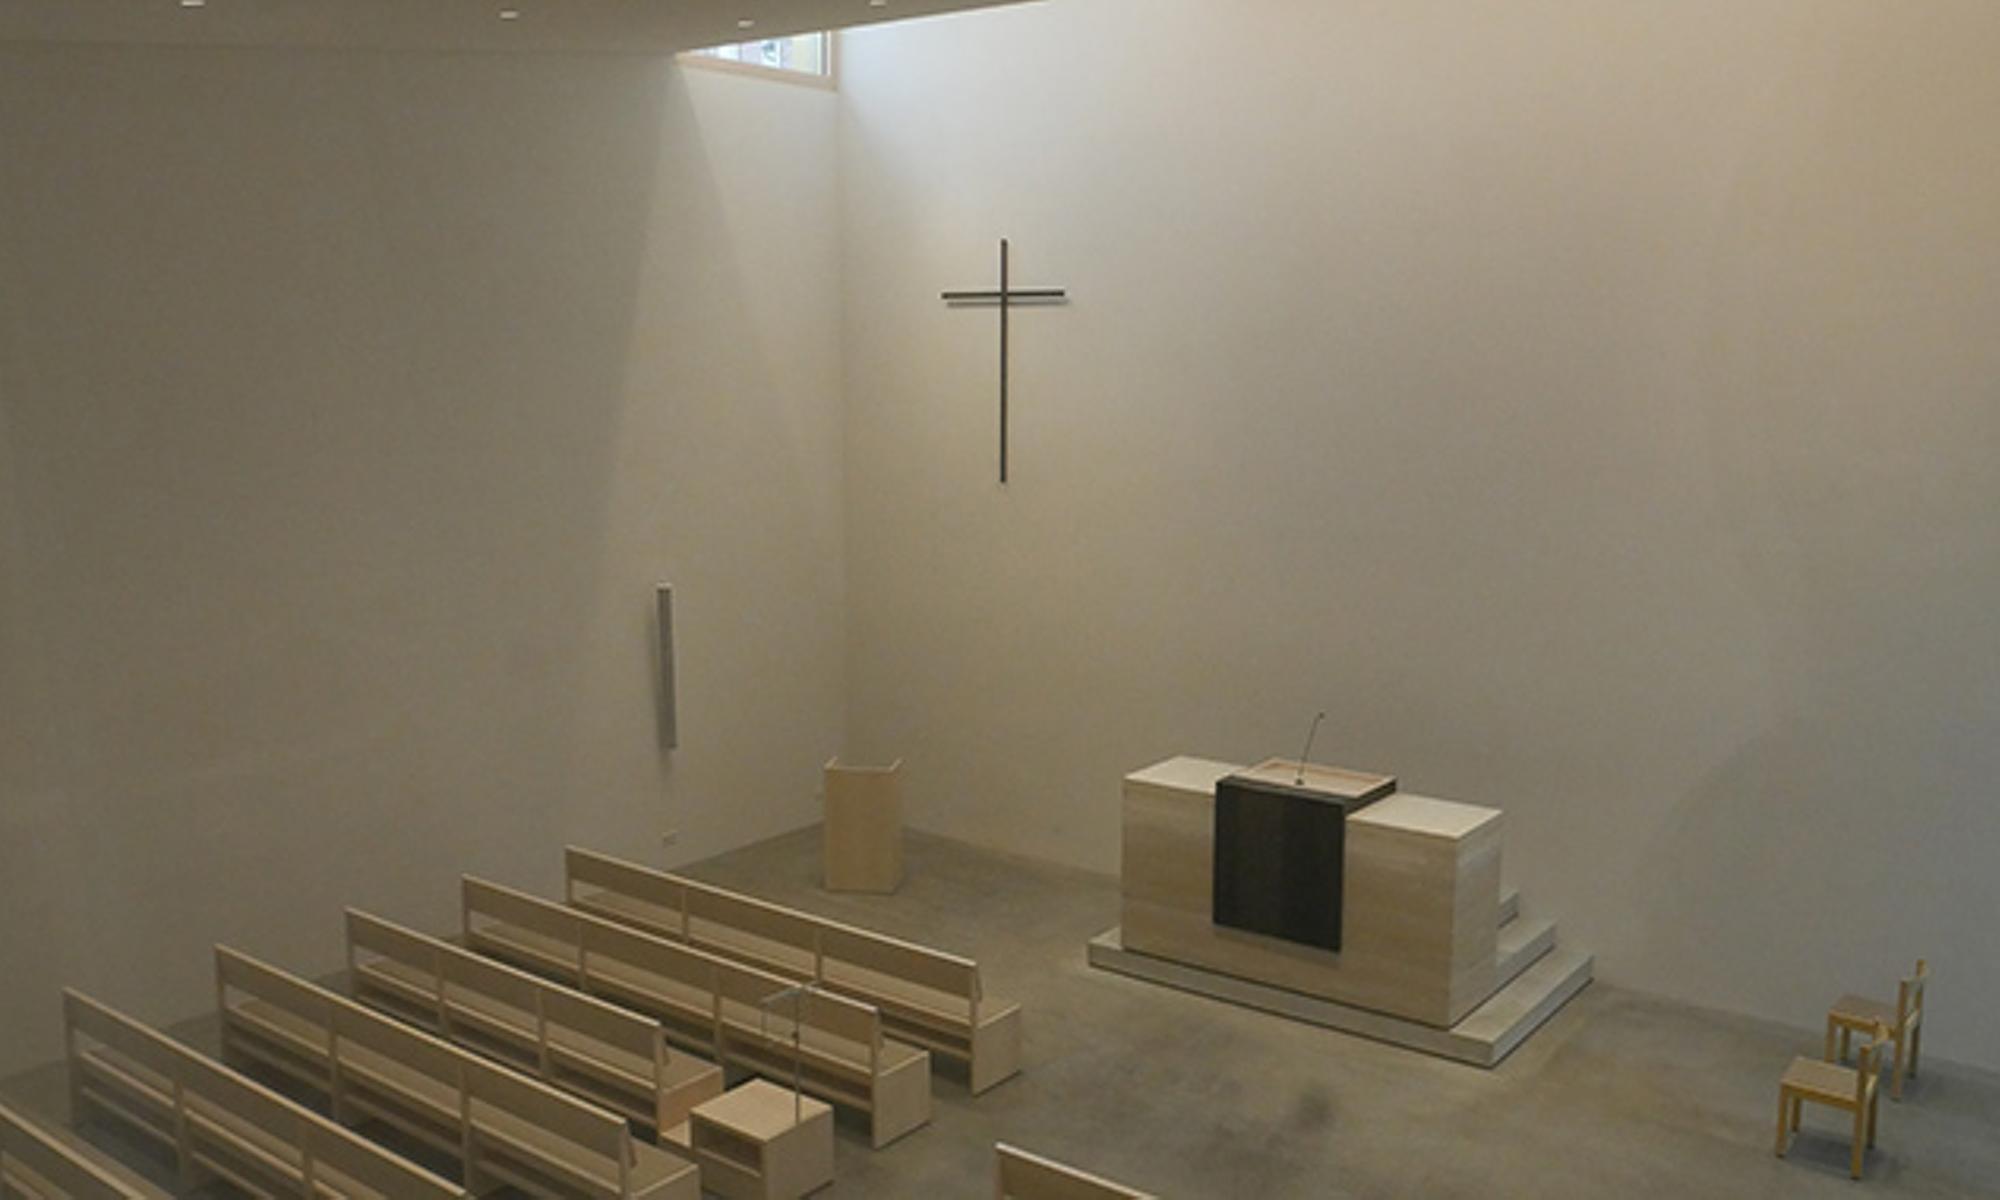 Das neue Kirchengebäude in Coburg